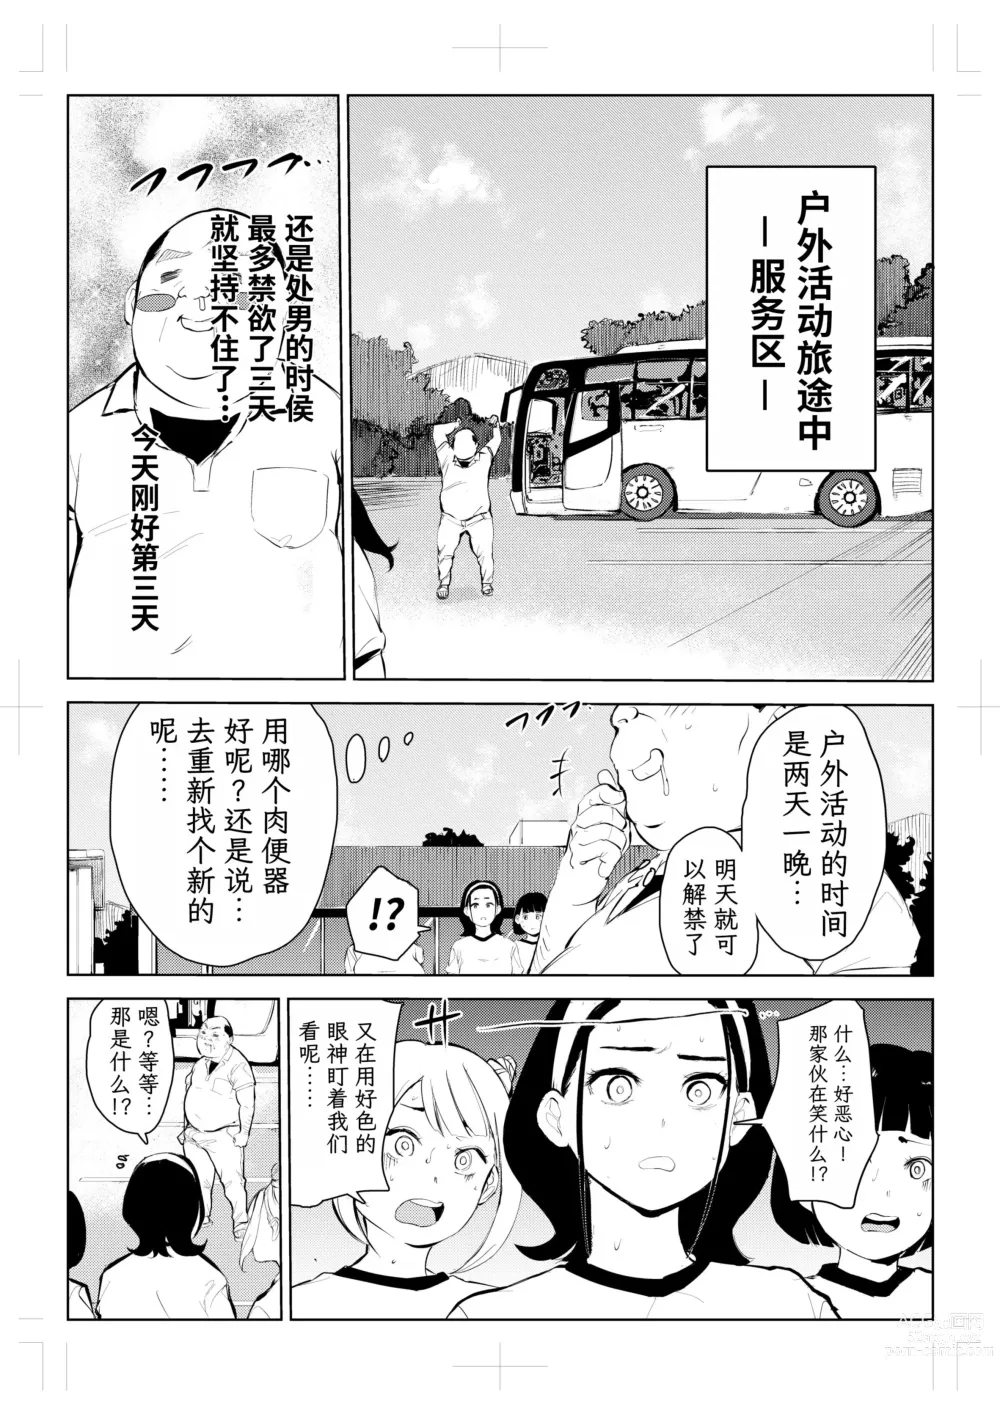 Page 11 of doujinshi 40-sai no Mahoutsukai 4